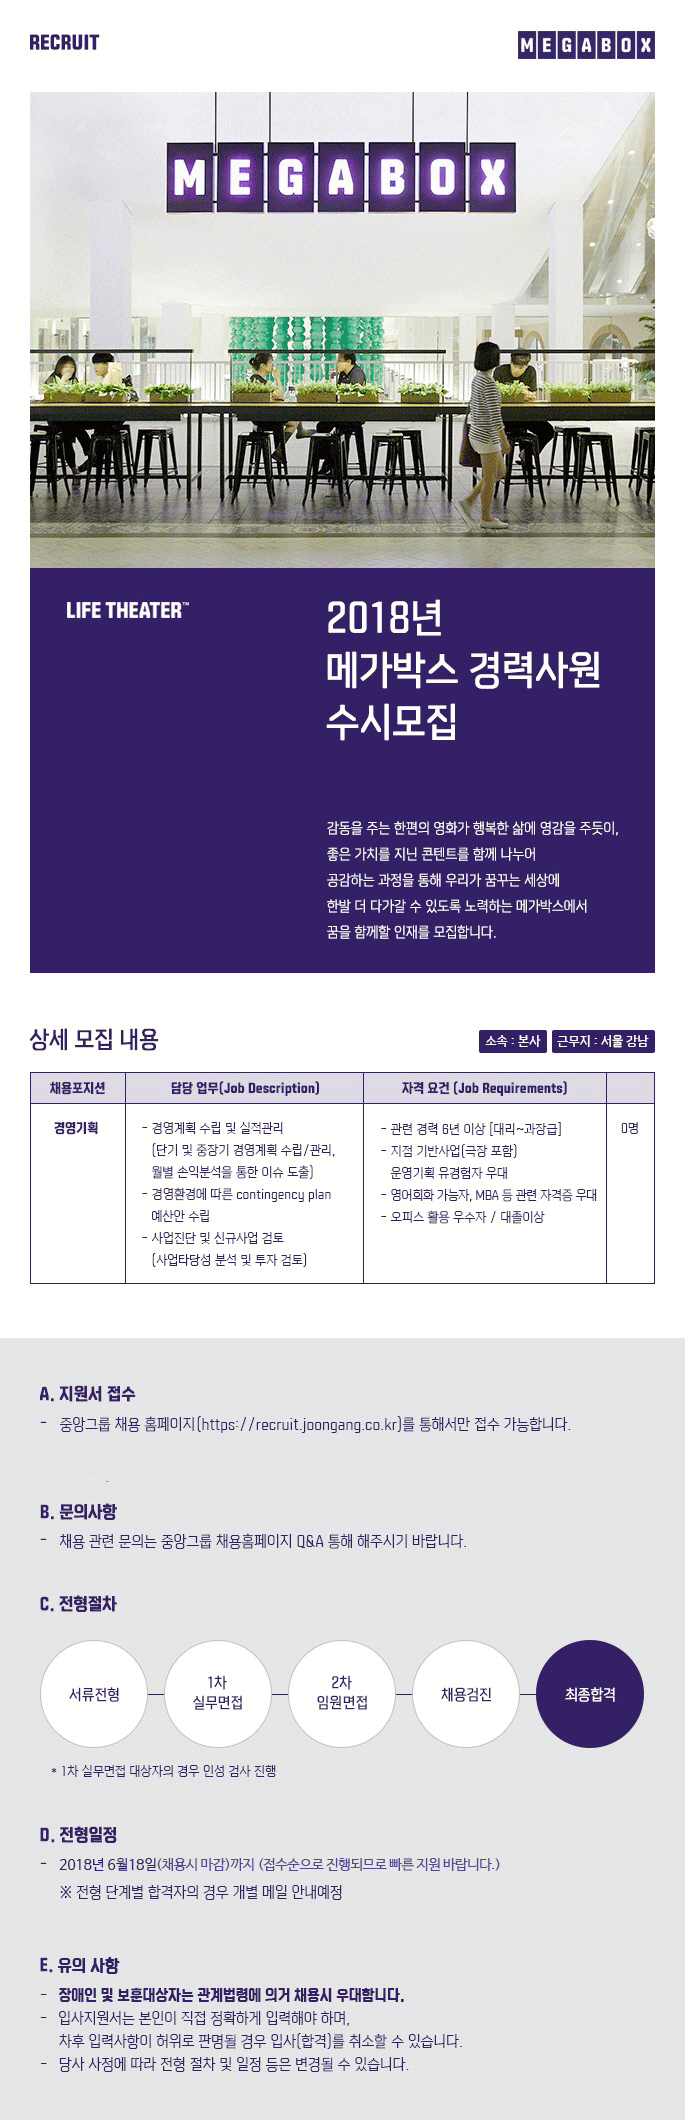 2018년 메가박스 경영기획 경력 수시모집